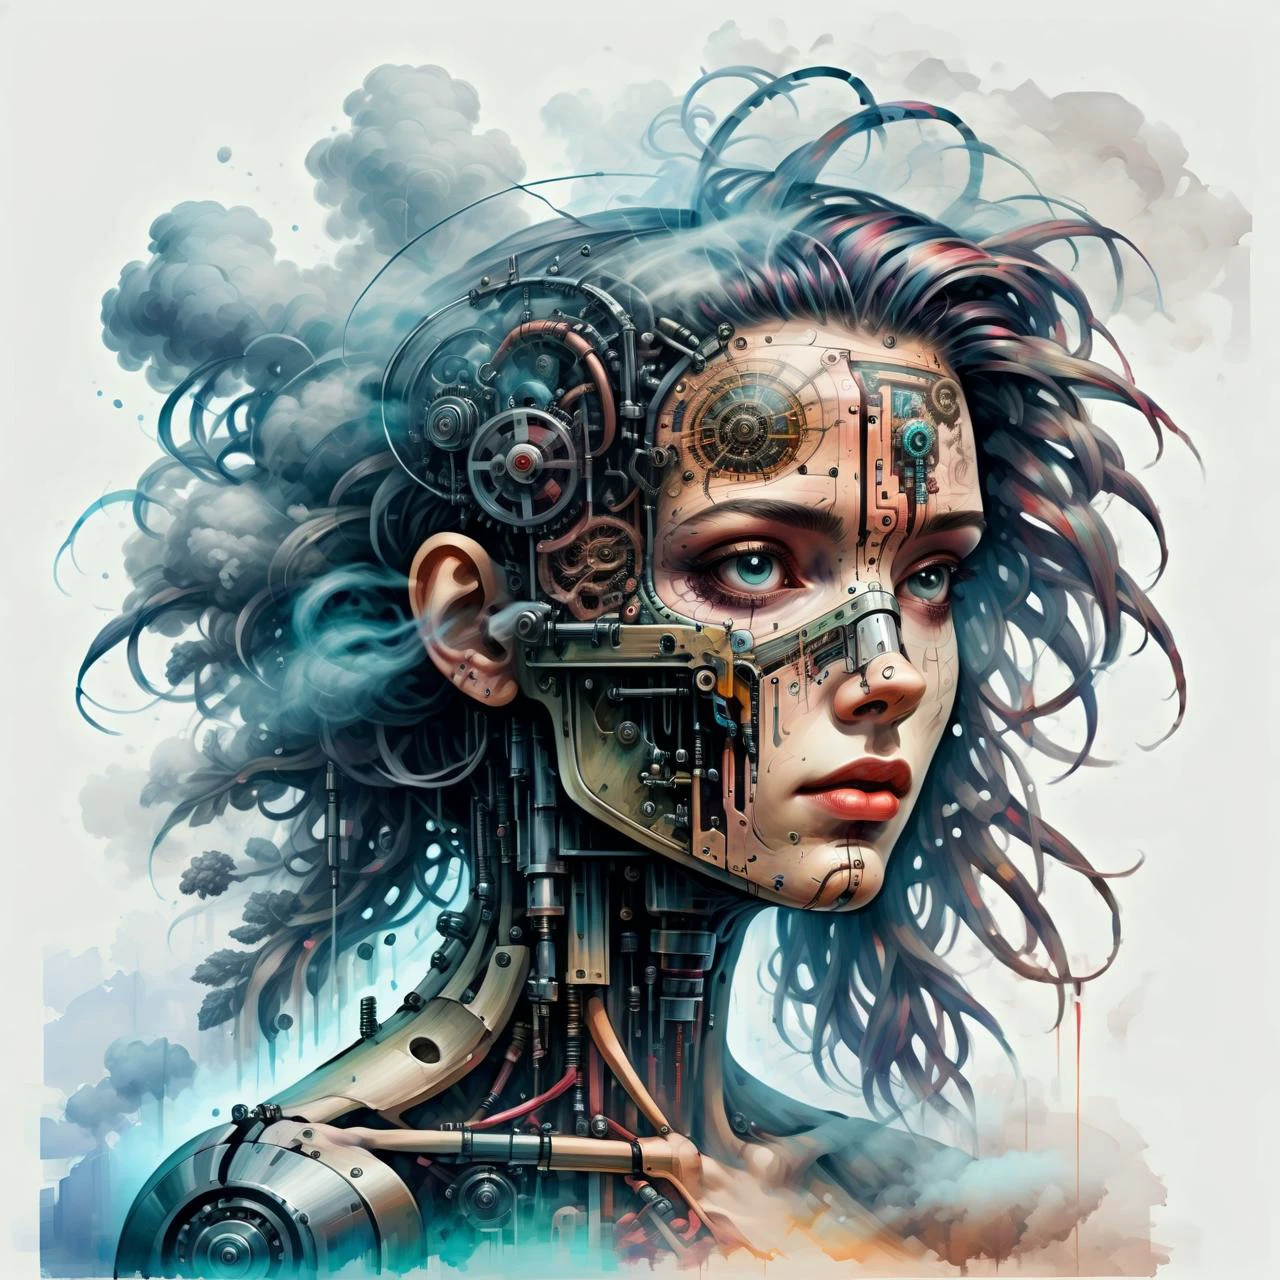 2D-Spielszene, Öl- und Aquarellmalerei, 1girl cyberpunk,Nebel, Rauch Doppelbelichtung, weißer Hintergrund Biomechanik, Tuschezeichnung, anatomisch, Und_Vinci, Vitruvian, Science-Fiction, Maschine, mechanische Teile